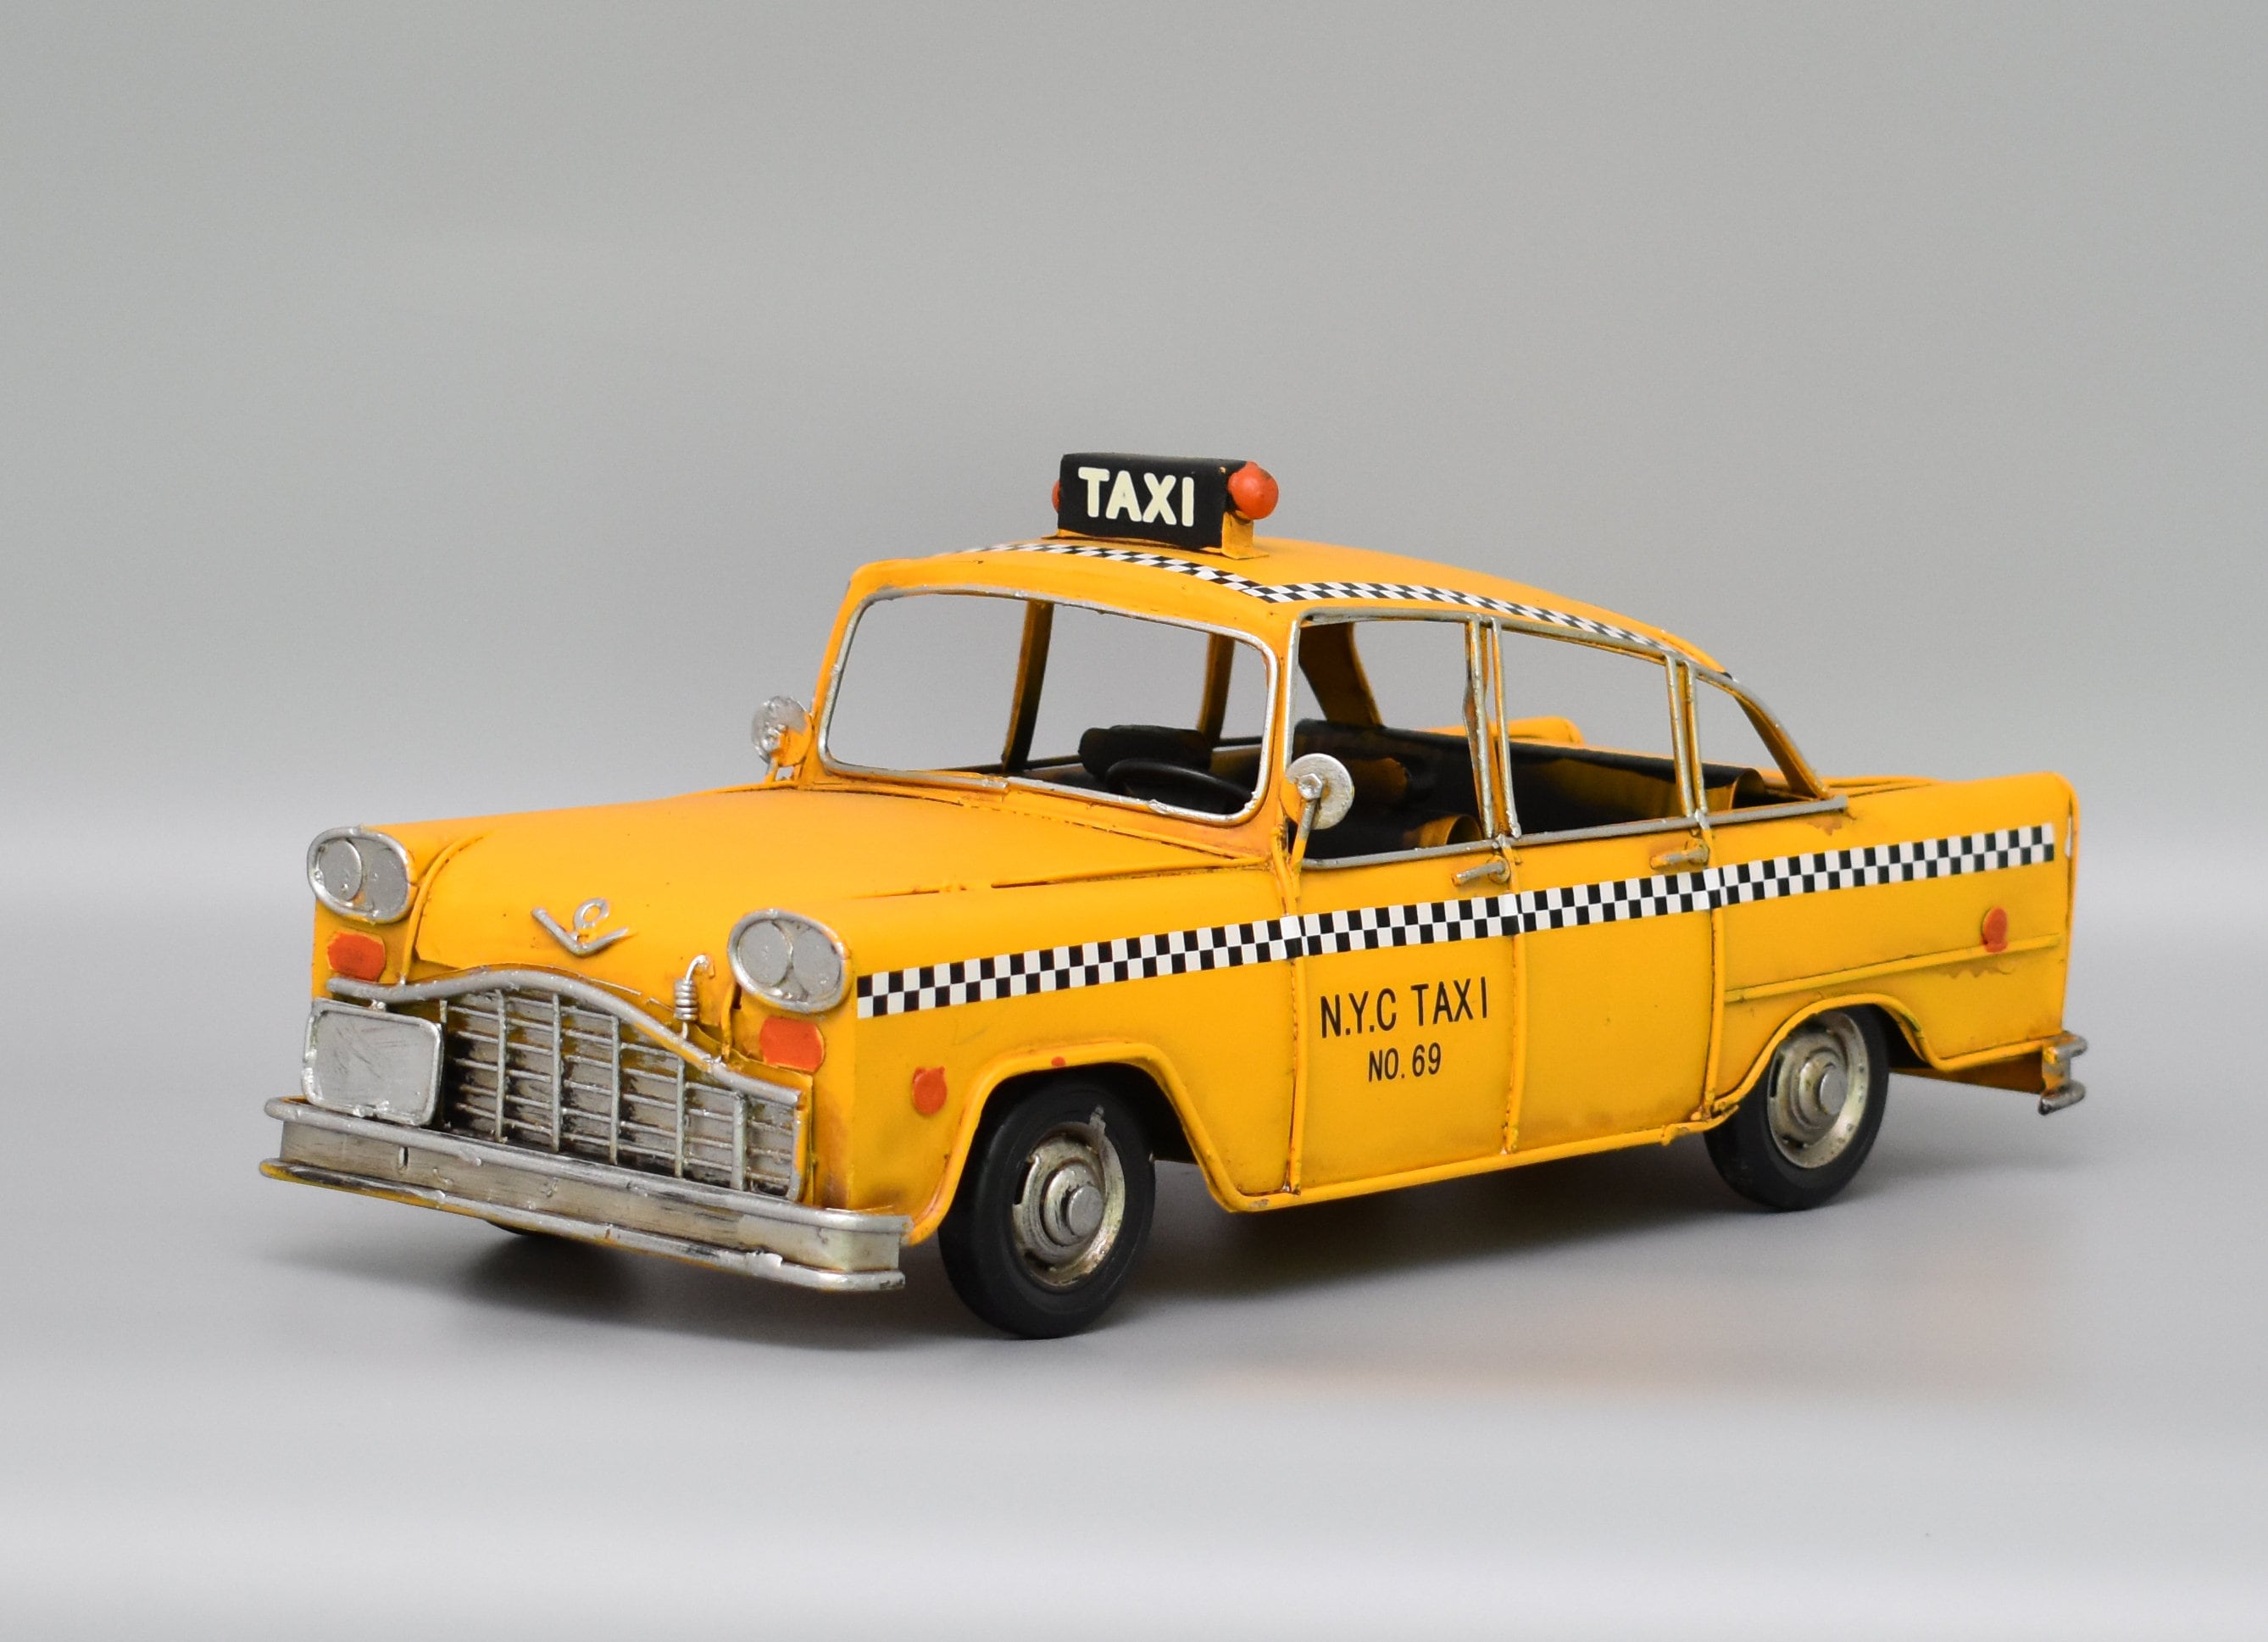 Taxi No69 - Fake Taxi - Etsy Sweden